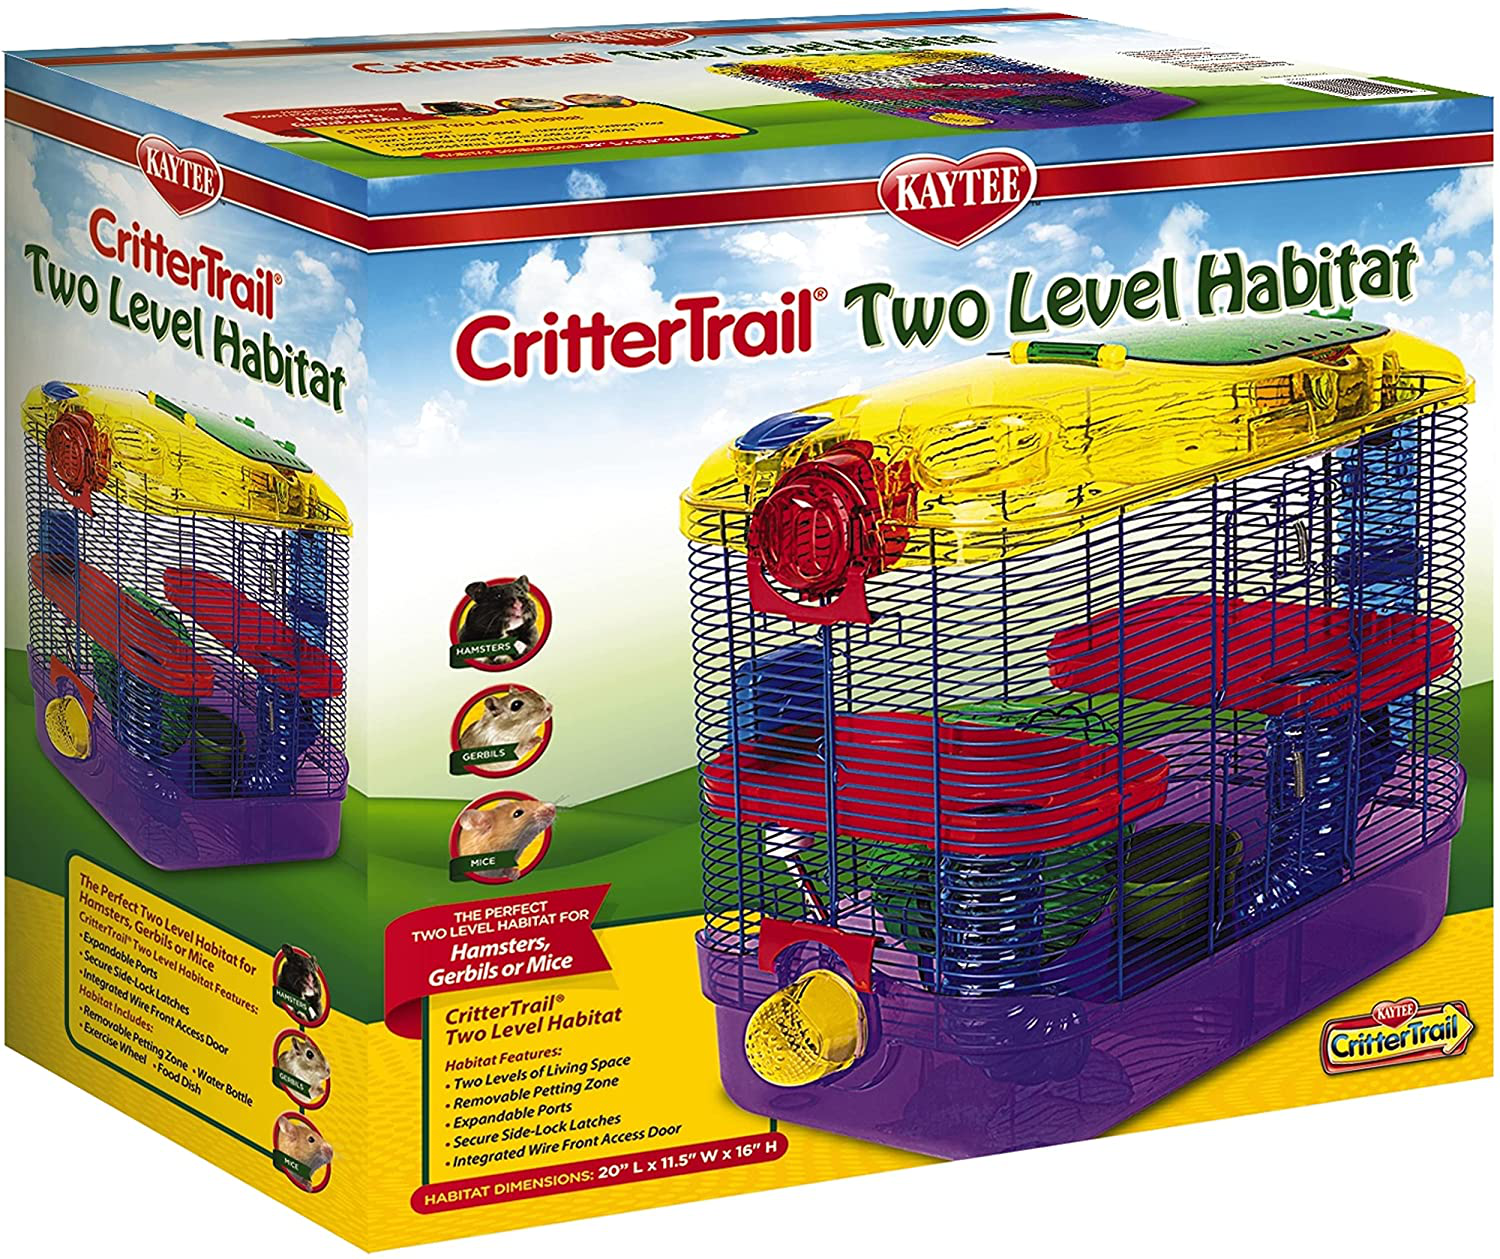 Kaytee Crittertrail Two Level Habitat